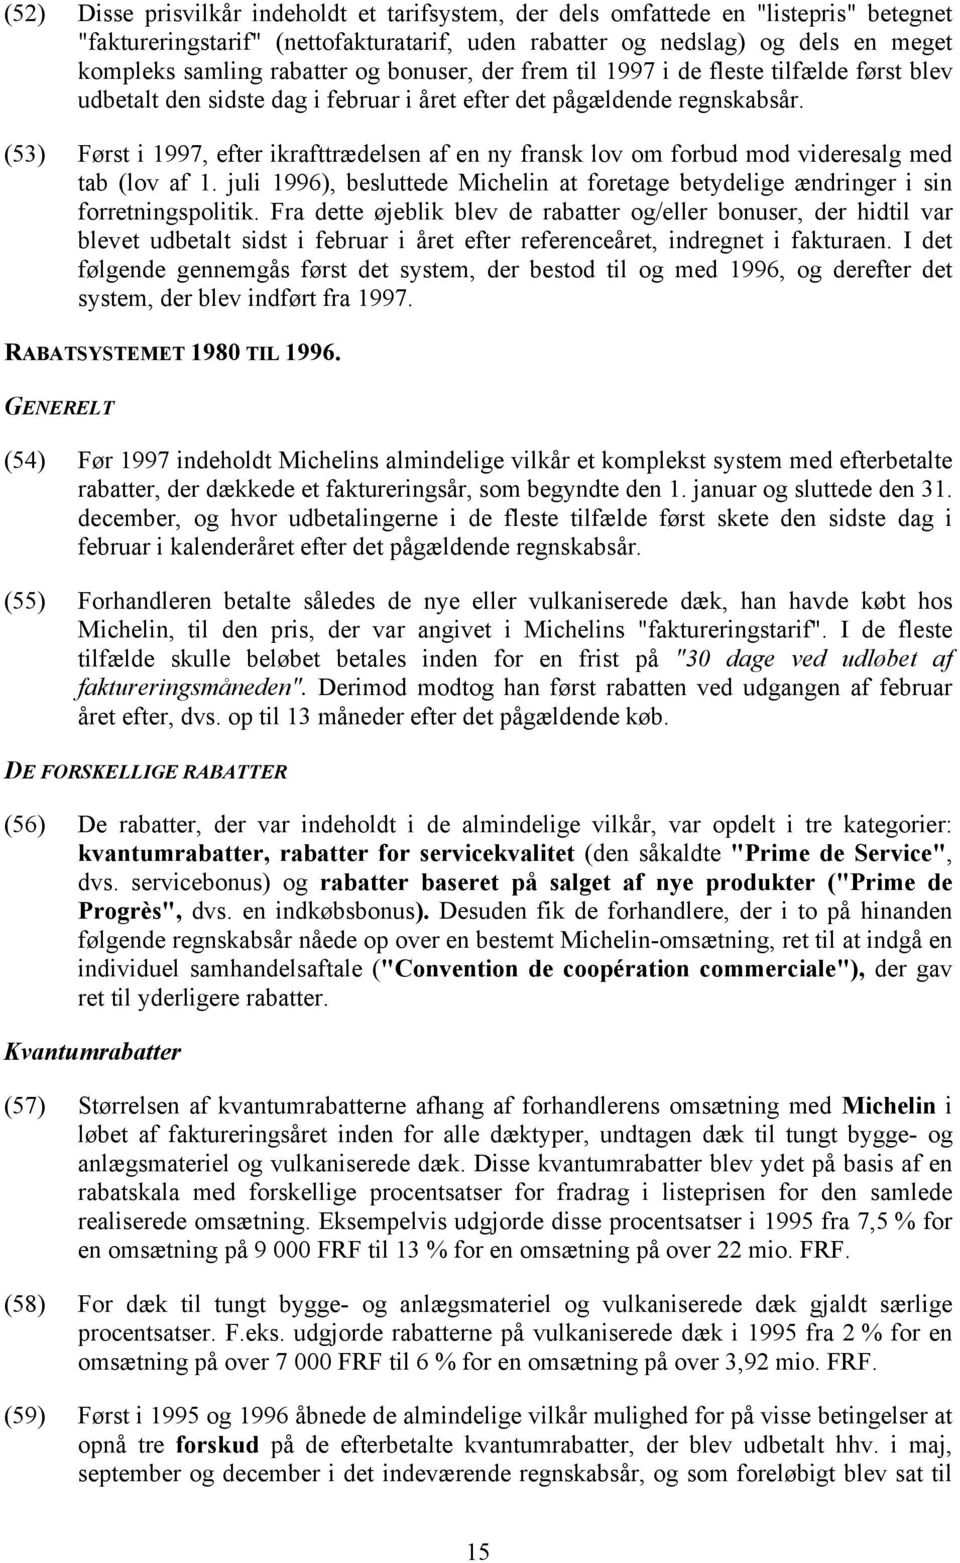 (53) Først i 1997, efter ikrafttrædelsen af en ny fransk lov om forbud mod videresalg med tab (lov af 1. juli 1996), besluttede Michelin at foretage betydelige ændringer i sin forretningspolitik.